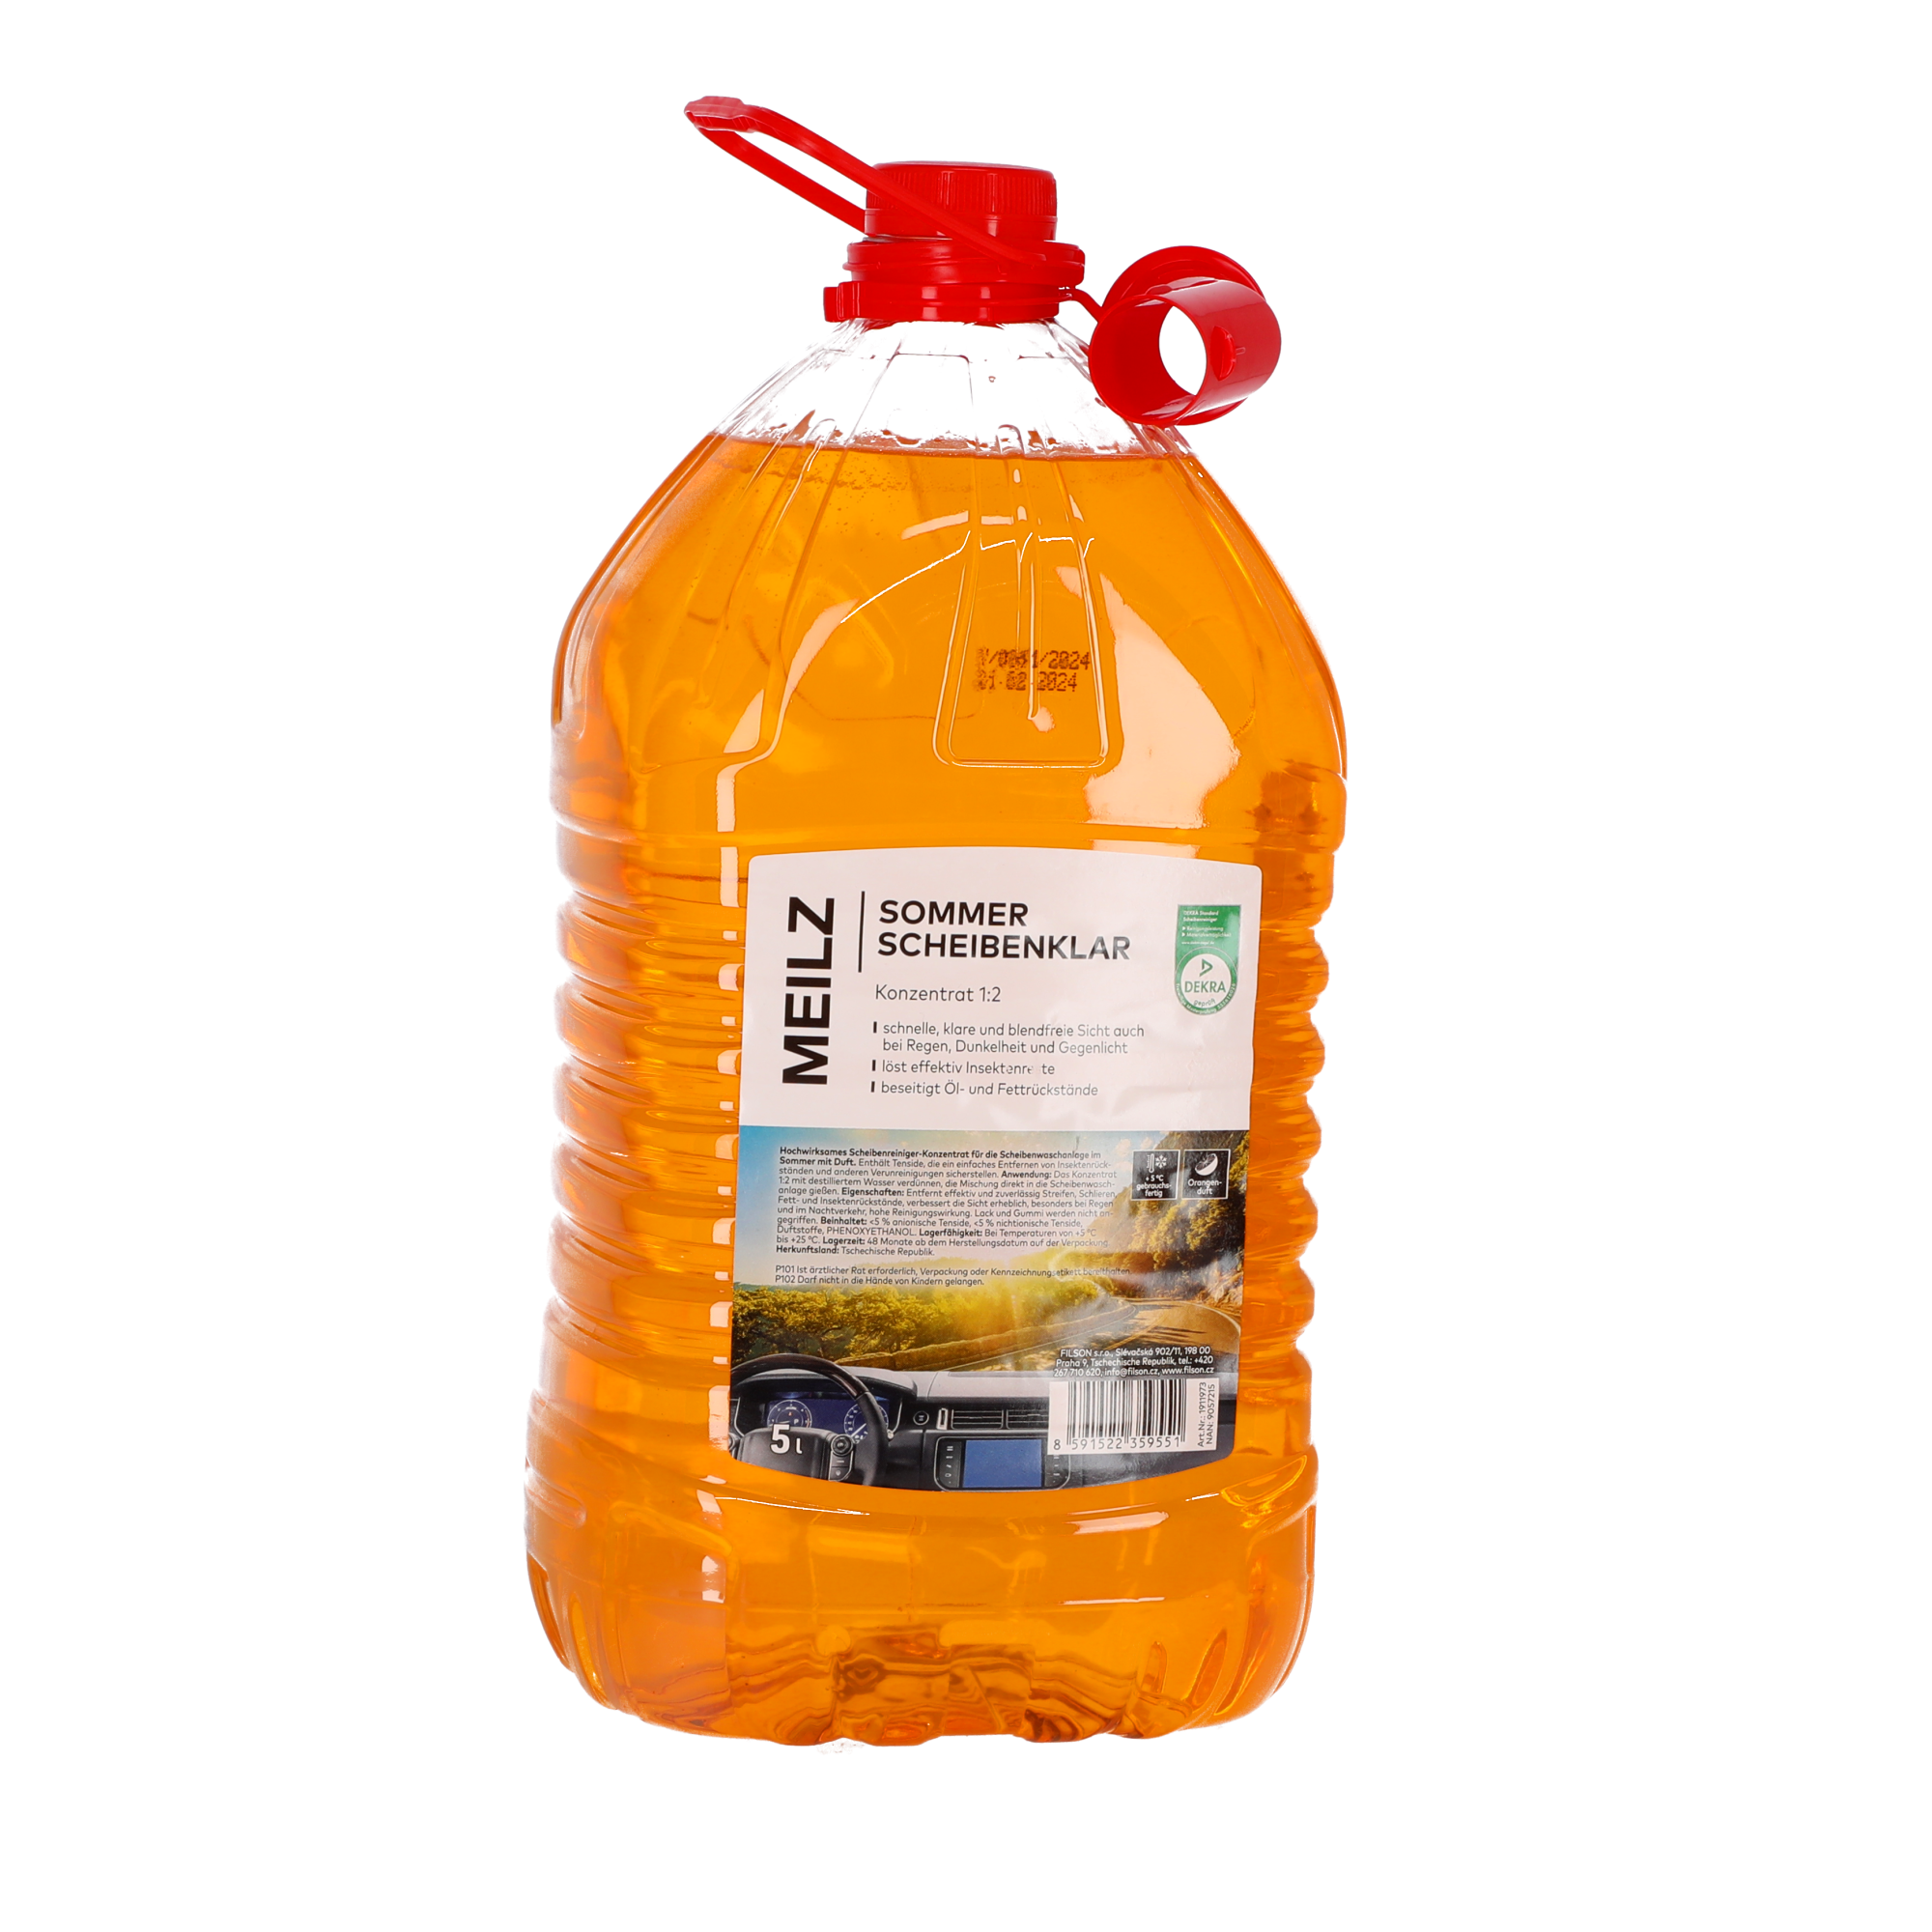 Scheibenklar 'Sommer' Orangenduft 5 l + product picture